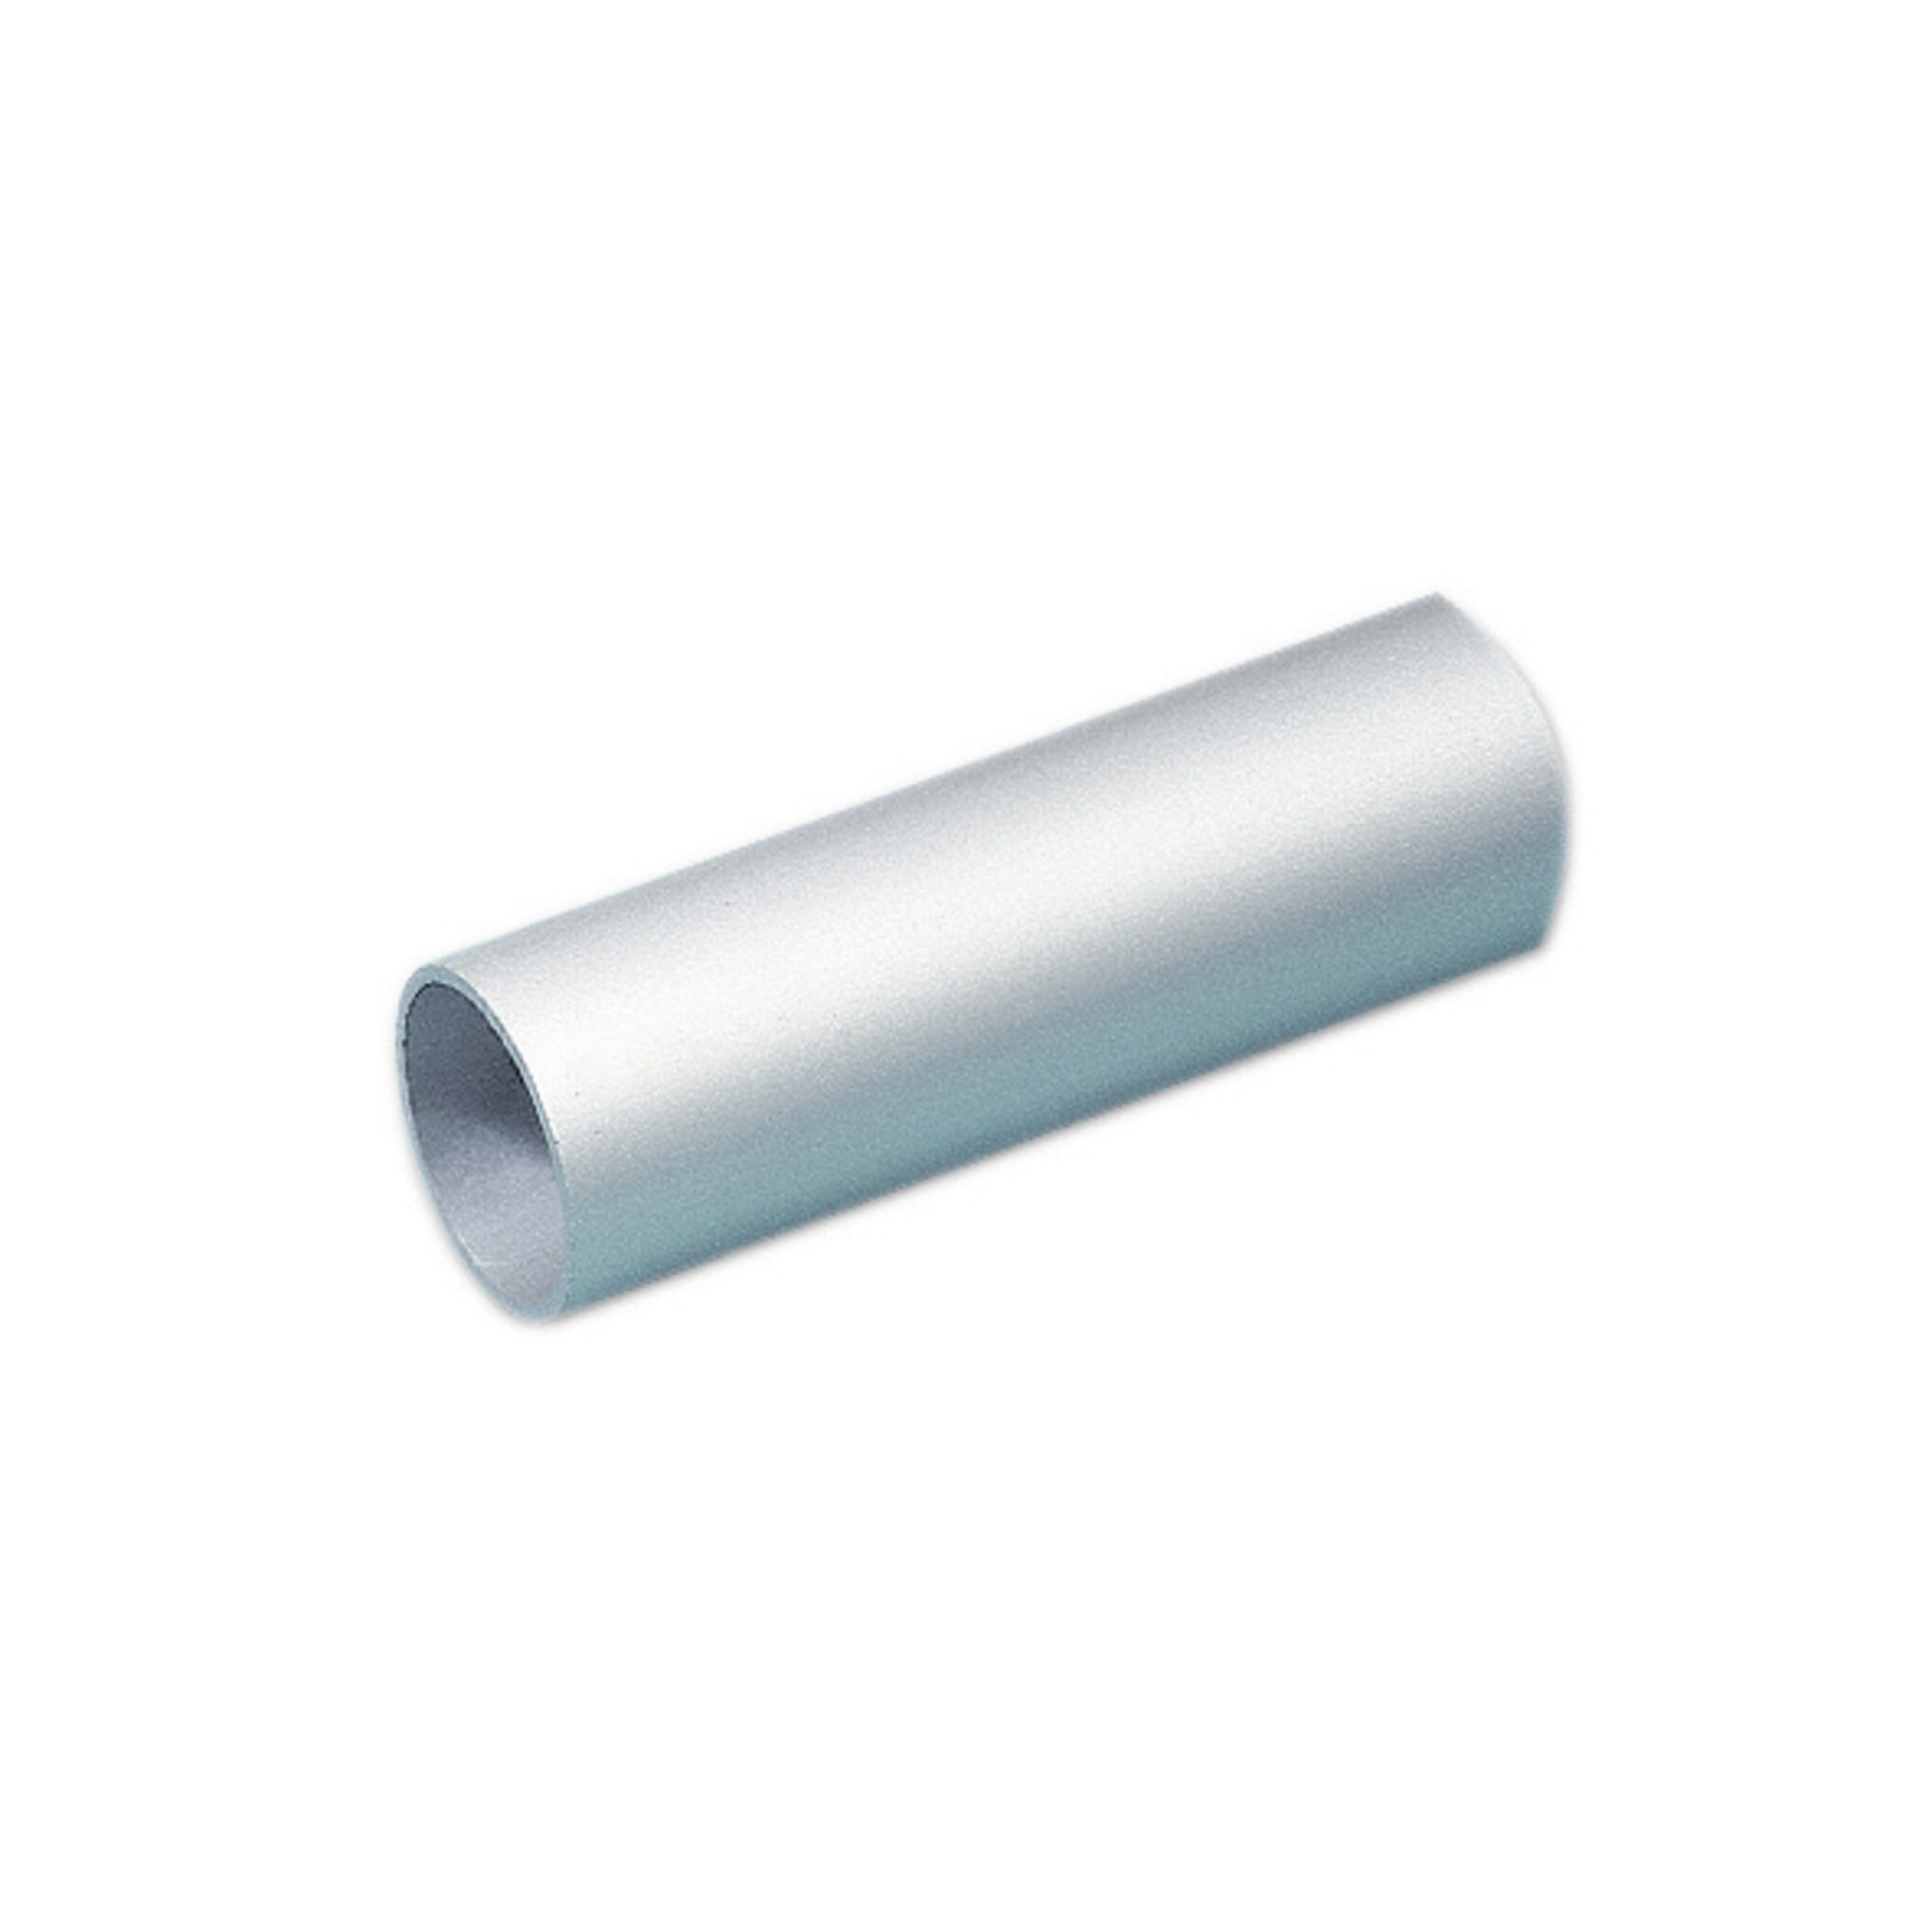 Aluminium tube for handrail fittings